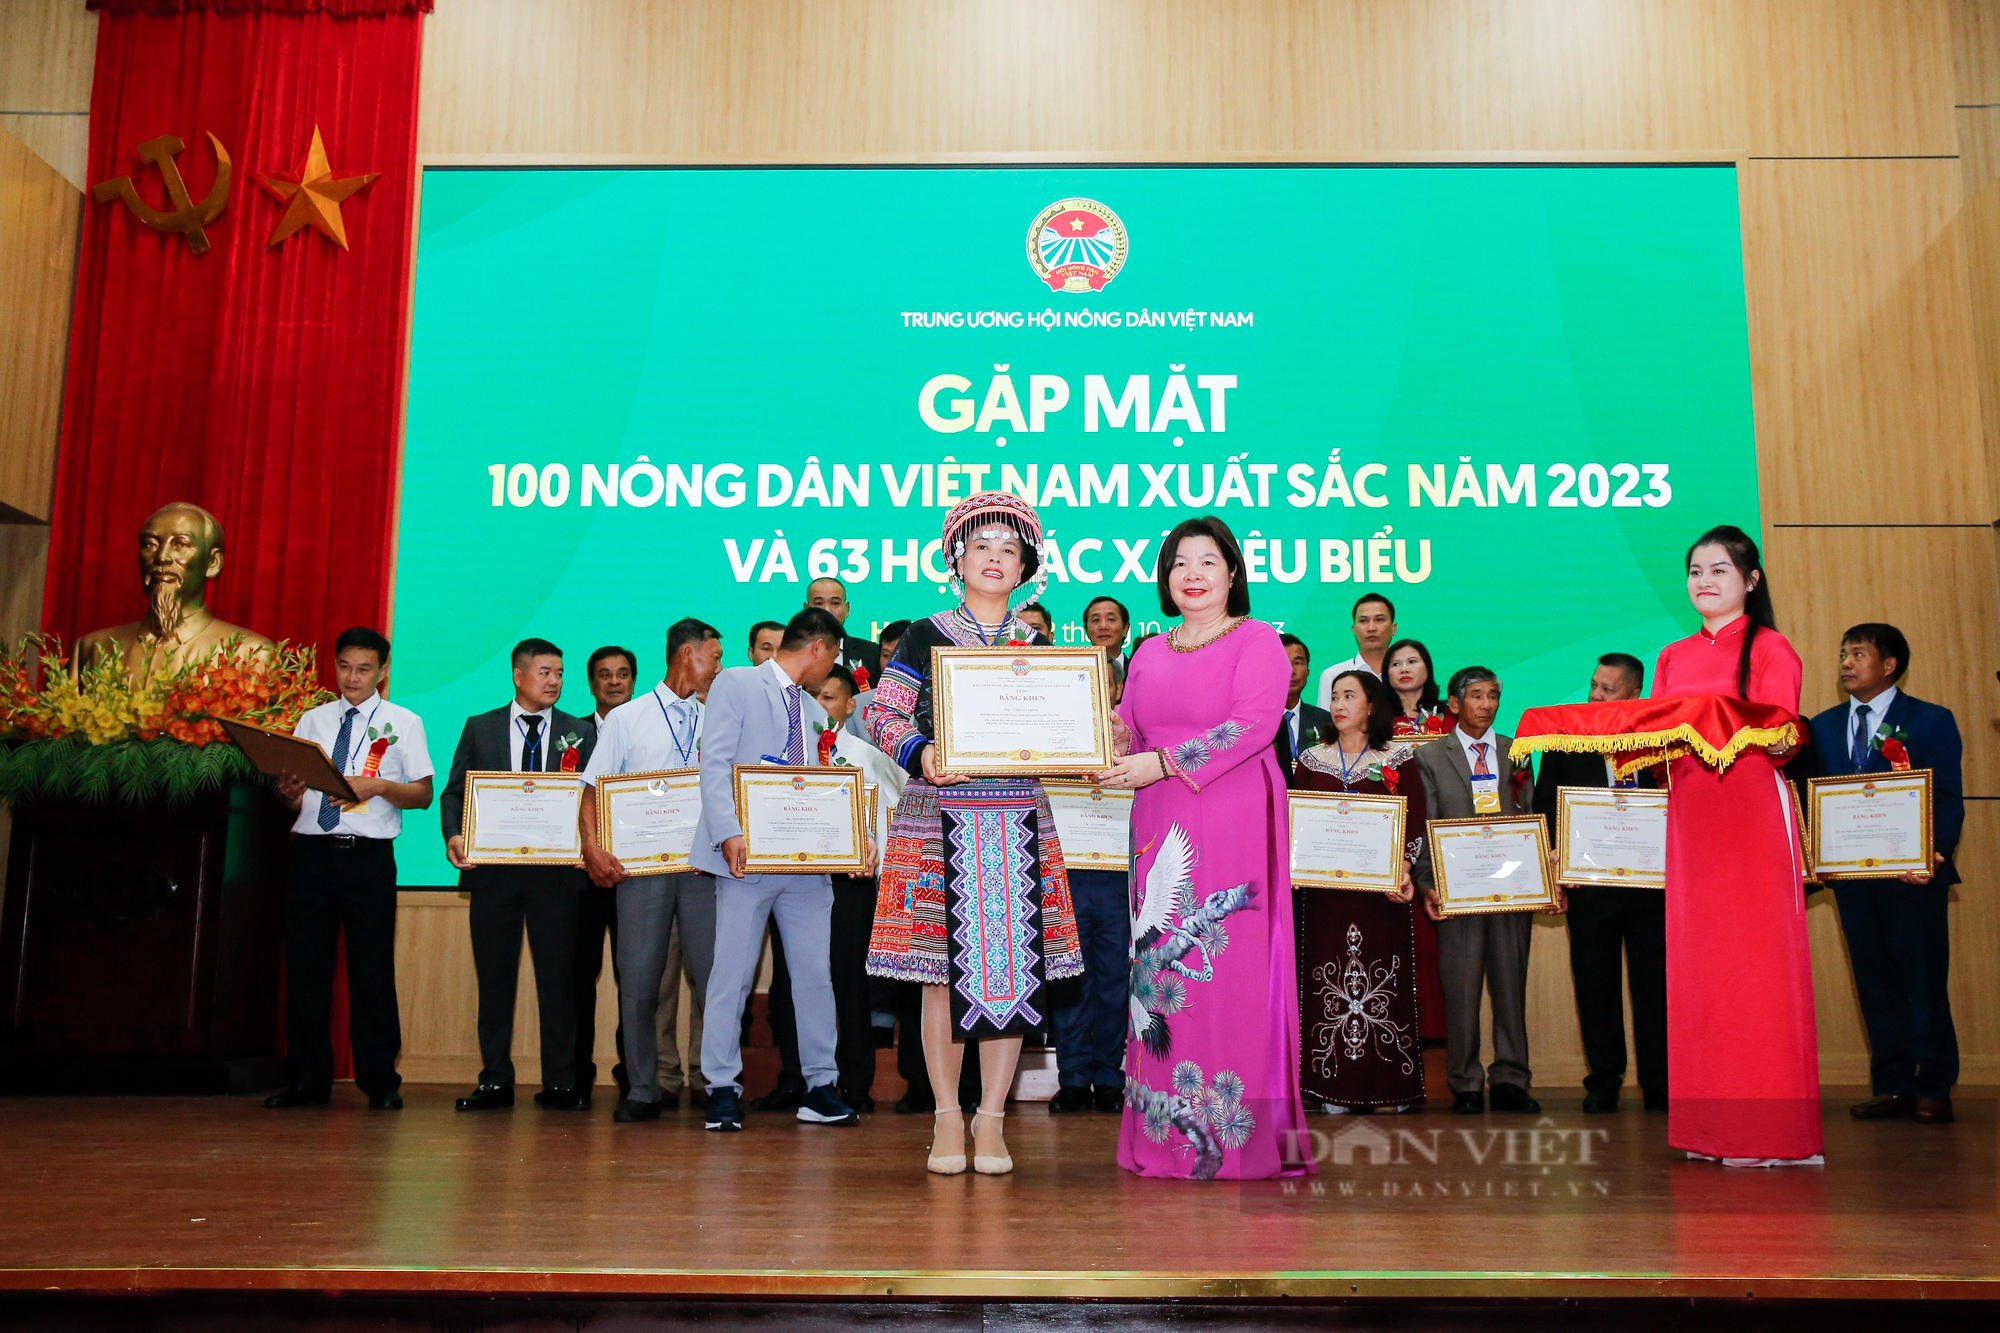 Hình ảnh 163 NDVNXS và HTX tiêu biểu 2023 nhận bằng khen từ Trung ương Hội nông dân Việt Nam - Ảnh 12.